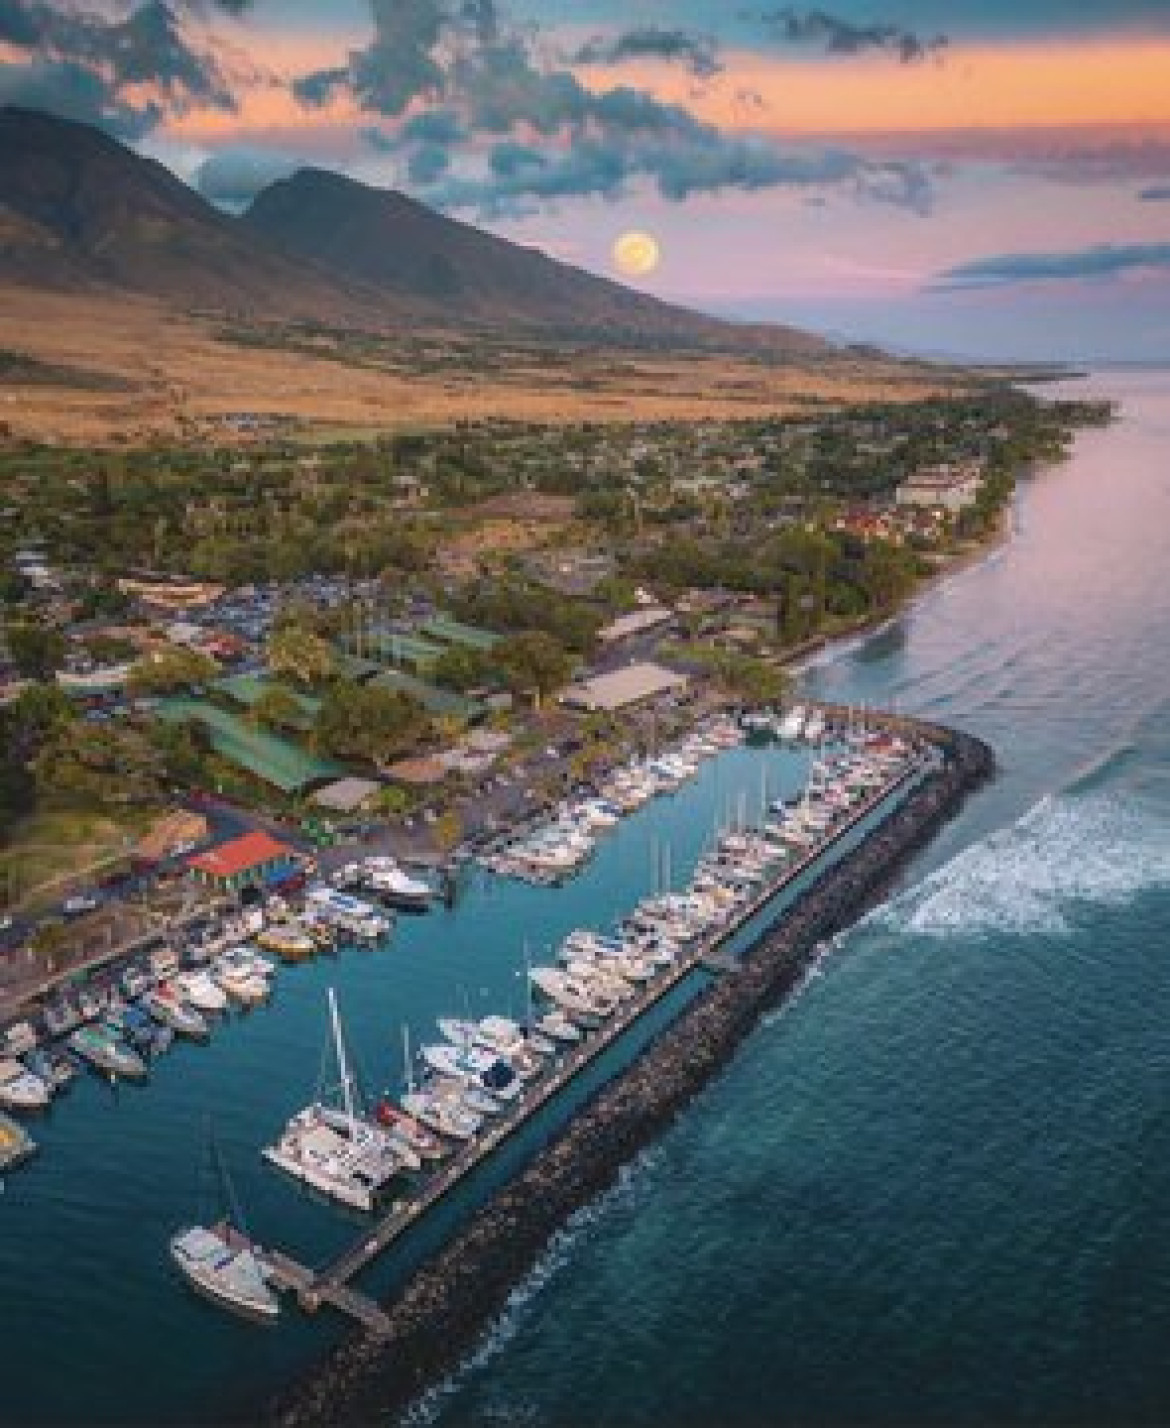 La Isla Lahaina - Maui, Hawái, Estados Unidos. @AlertaMundial2.